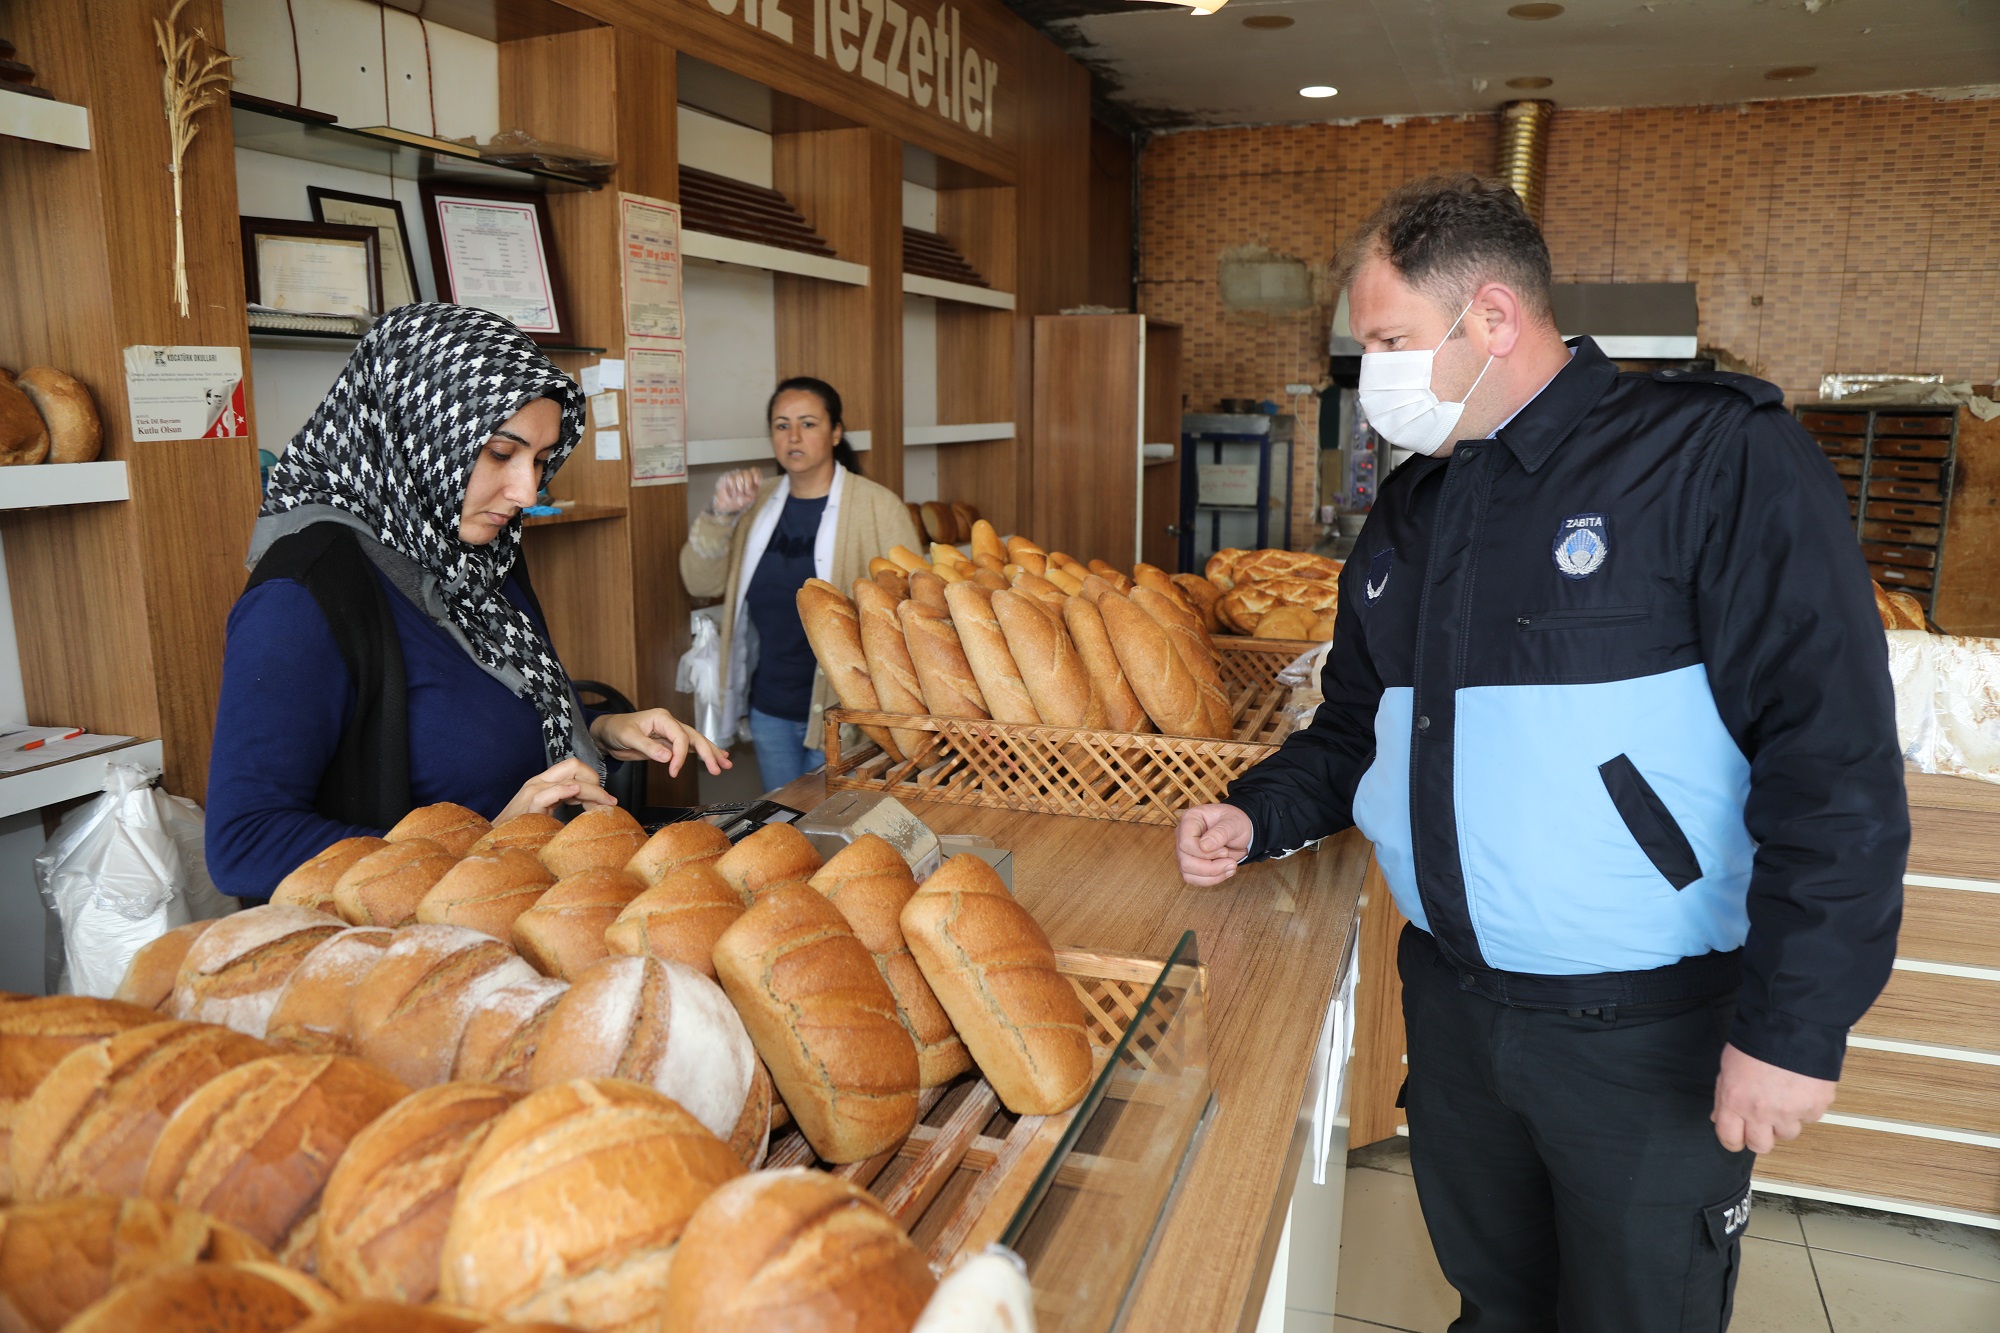 Gaziemir’de ekmek fırınlarına koronavirüs denetimi